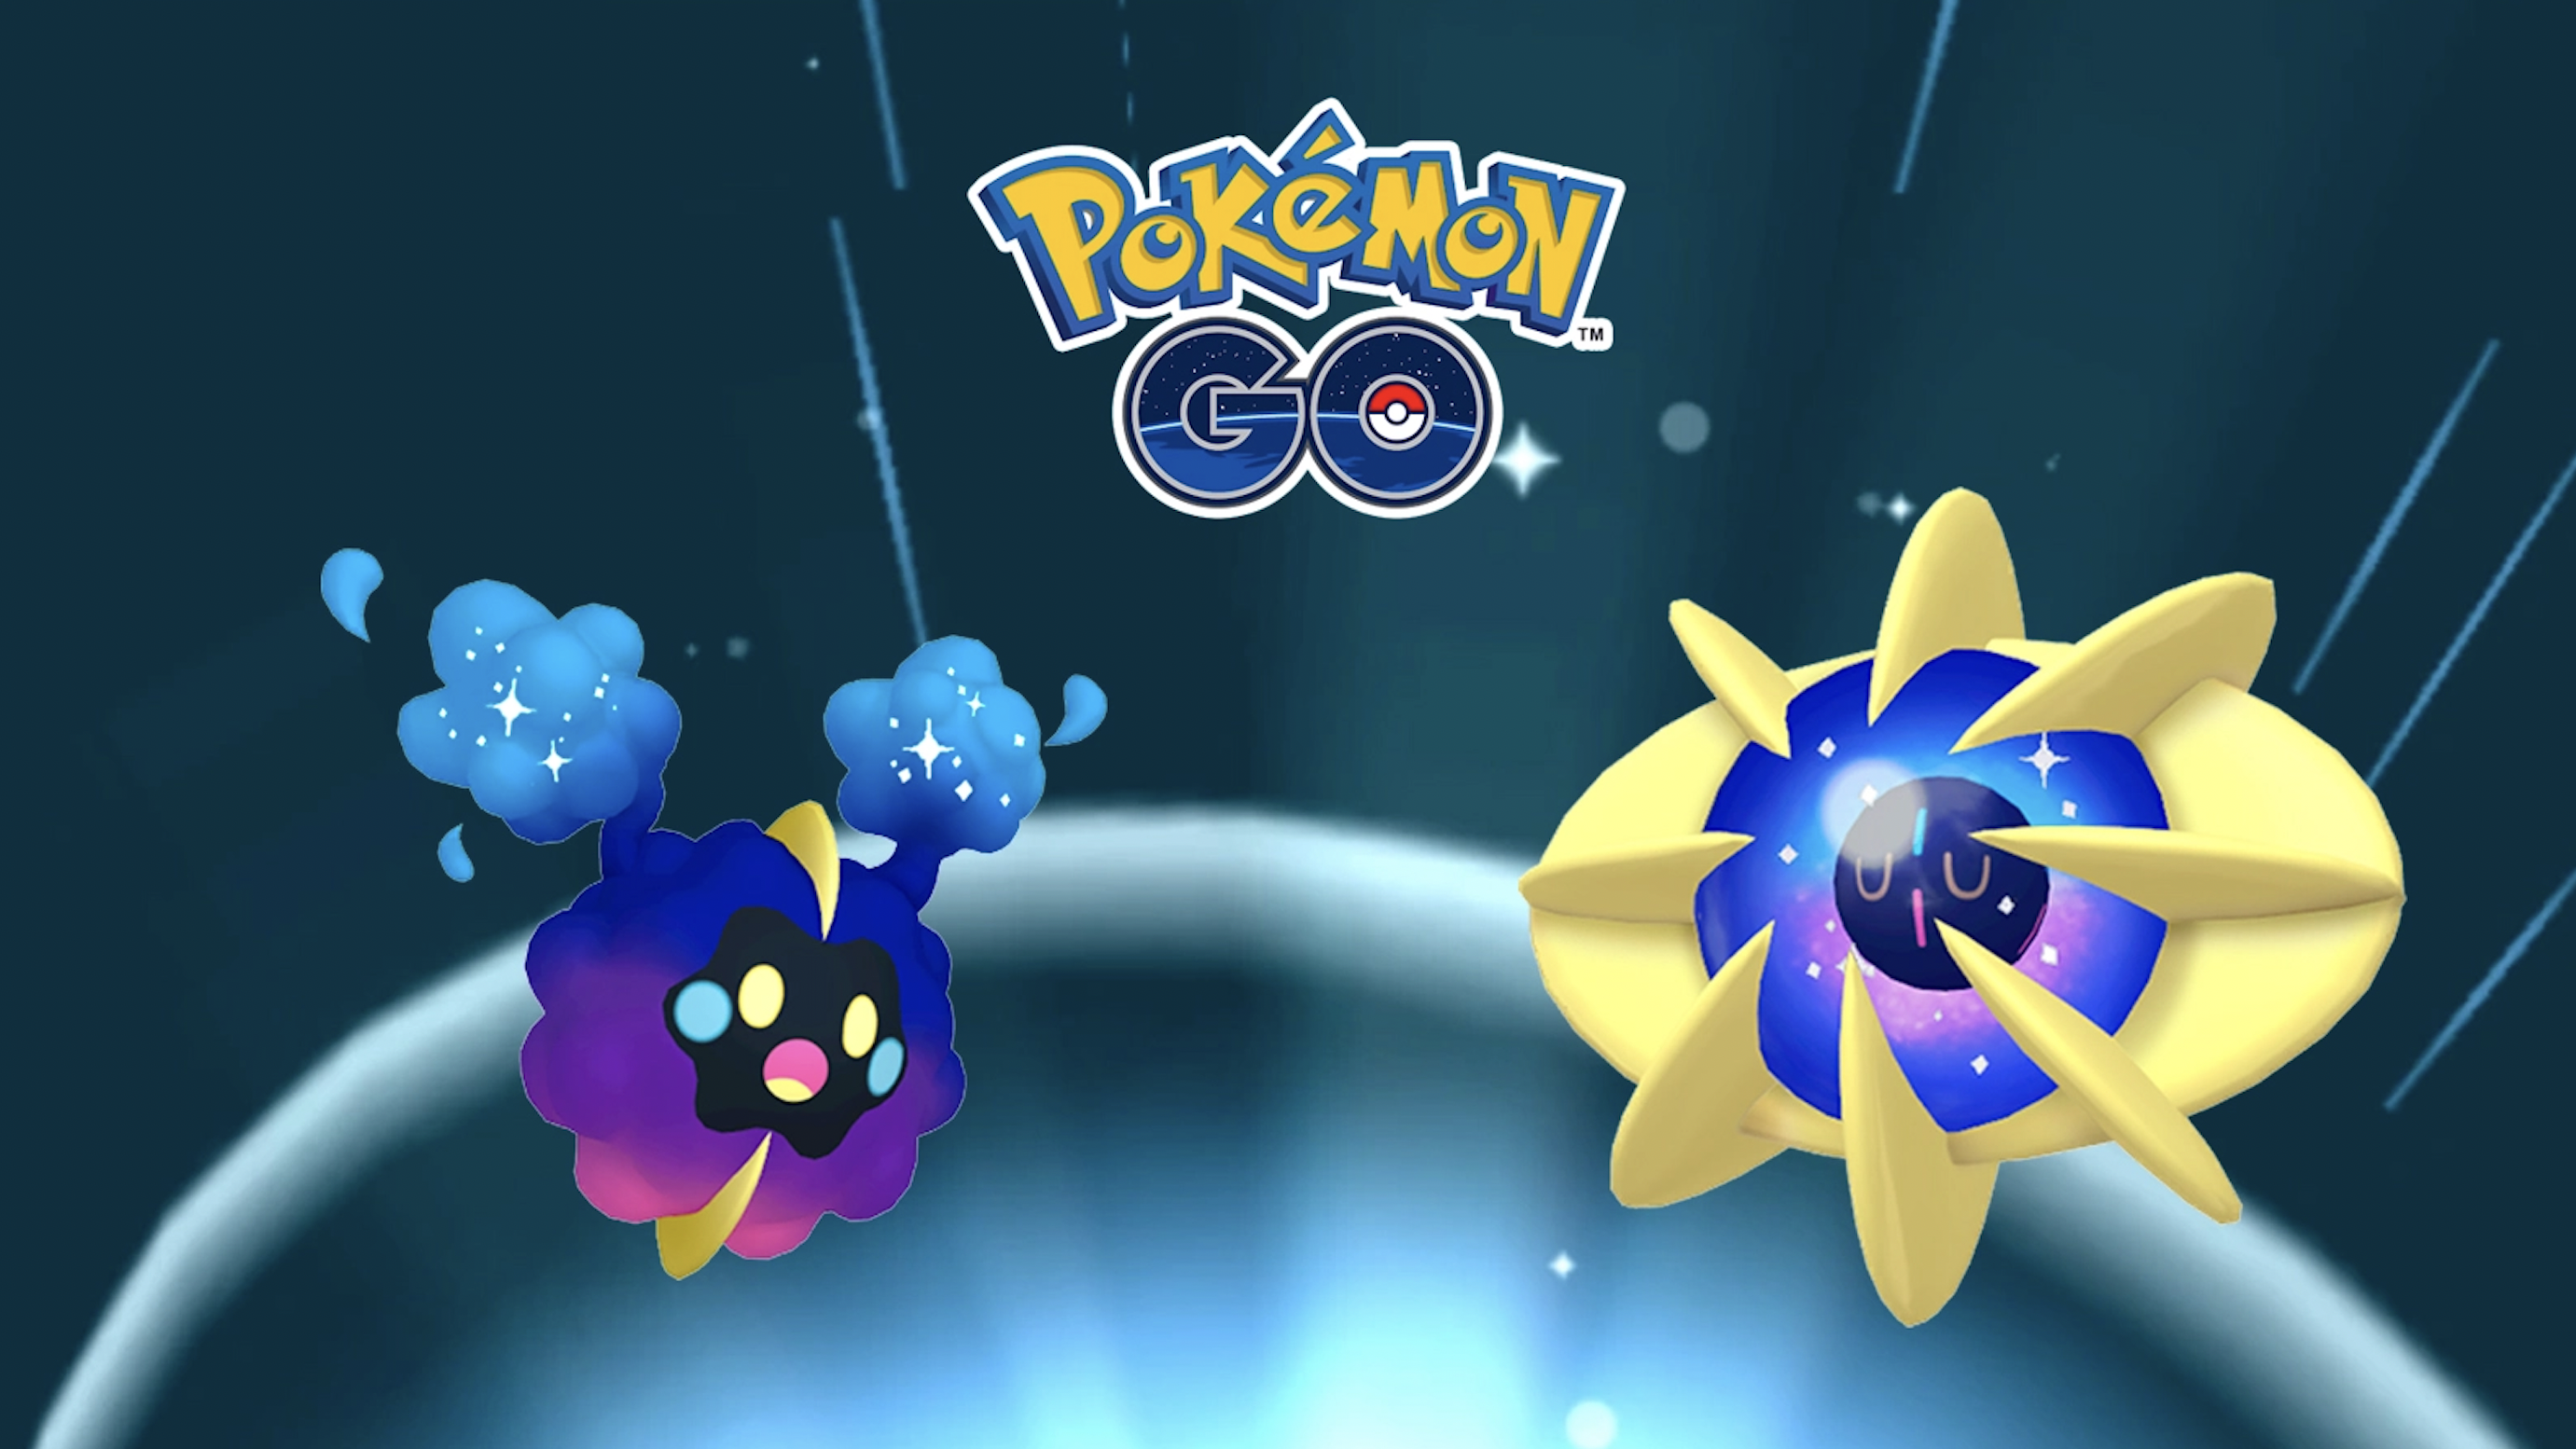 Pokémon Go: Sut i Esblygu Cosmog